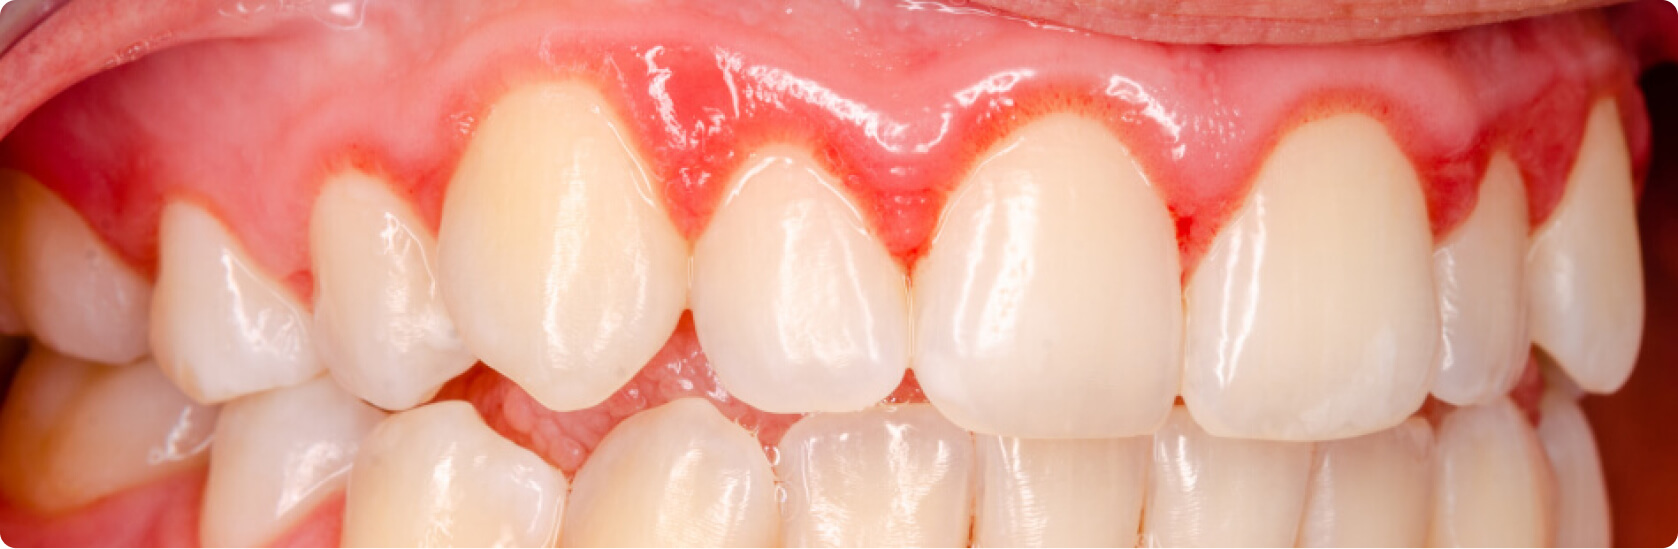 Zahnfleischentzündung (Gingivitis) - Was ist eine Zahnfleischentzündung?